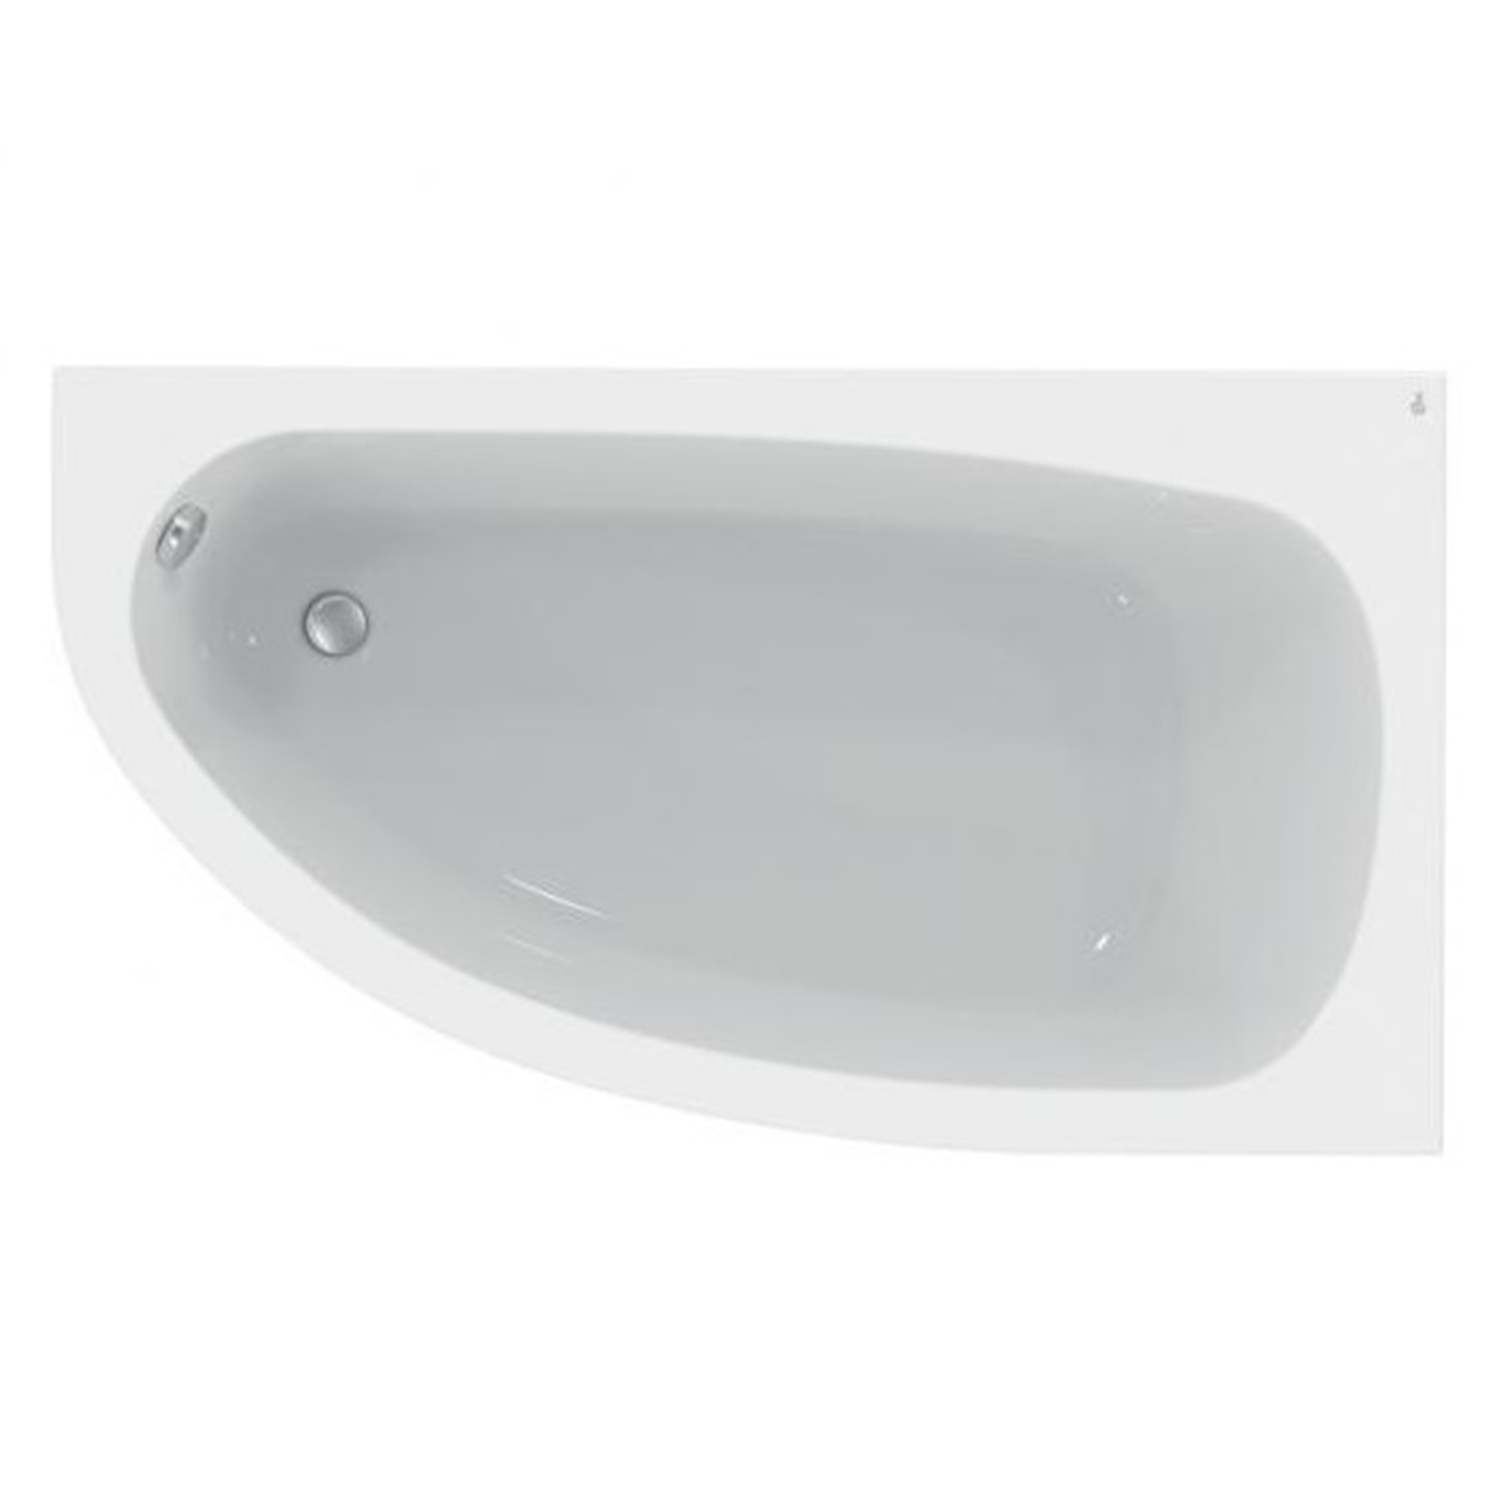 Акриловая ванна Ideal Standard Hotline 160х90 правая акриловая ванна ideal standard hotline 170x75 k274601